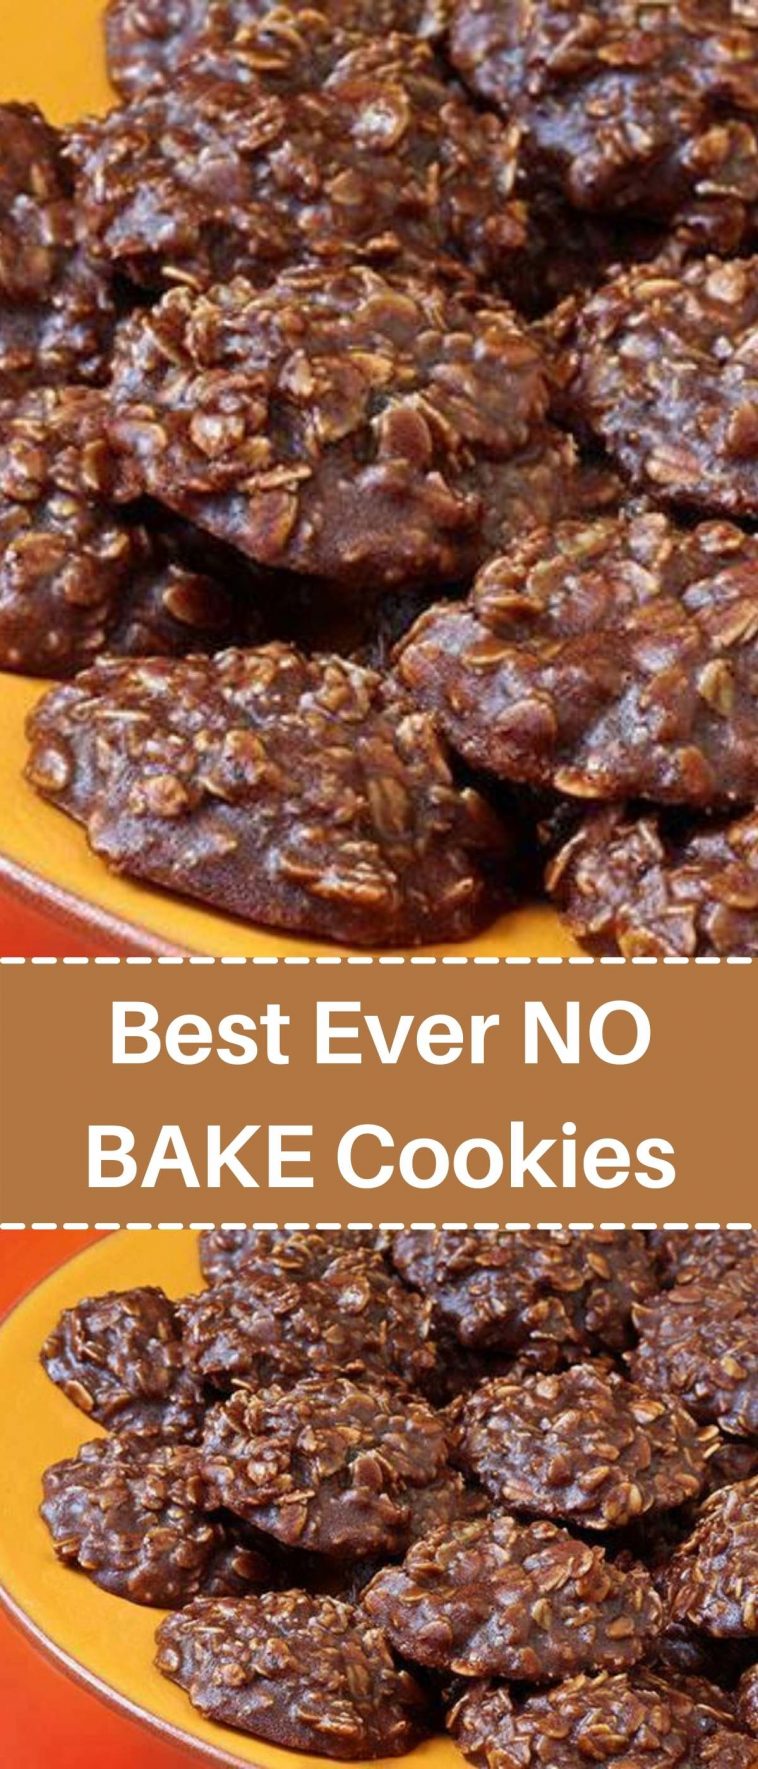 Best Ever NO BAKE Cookies